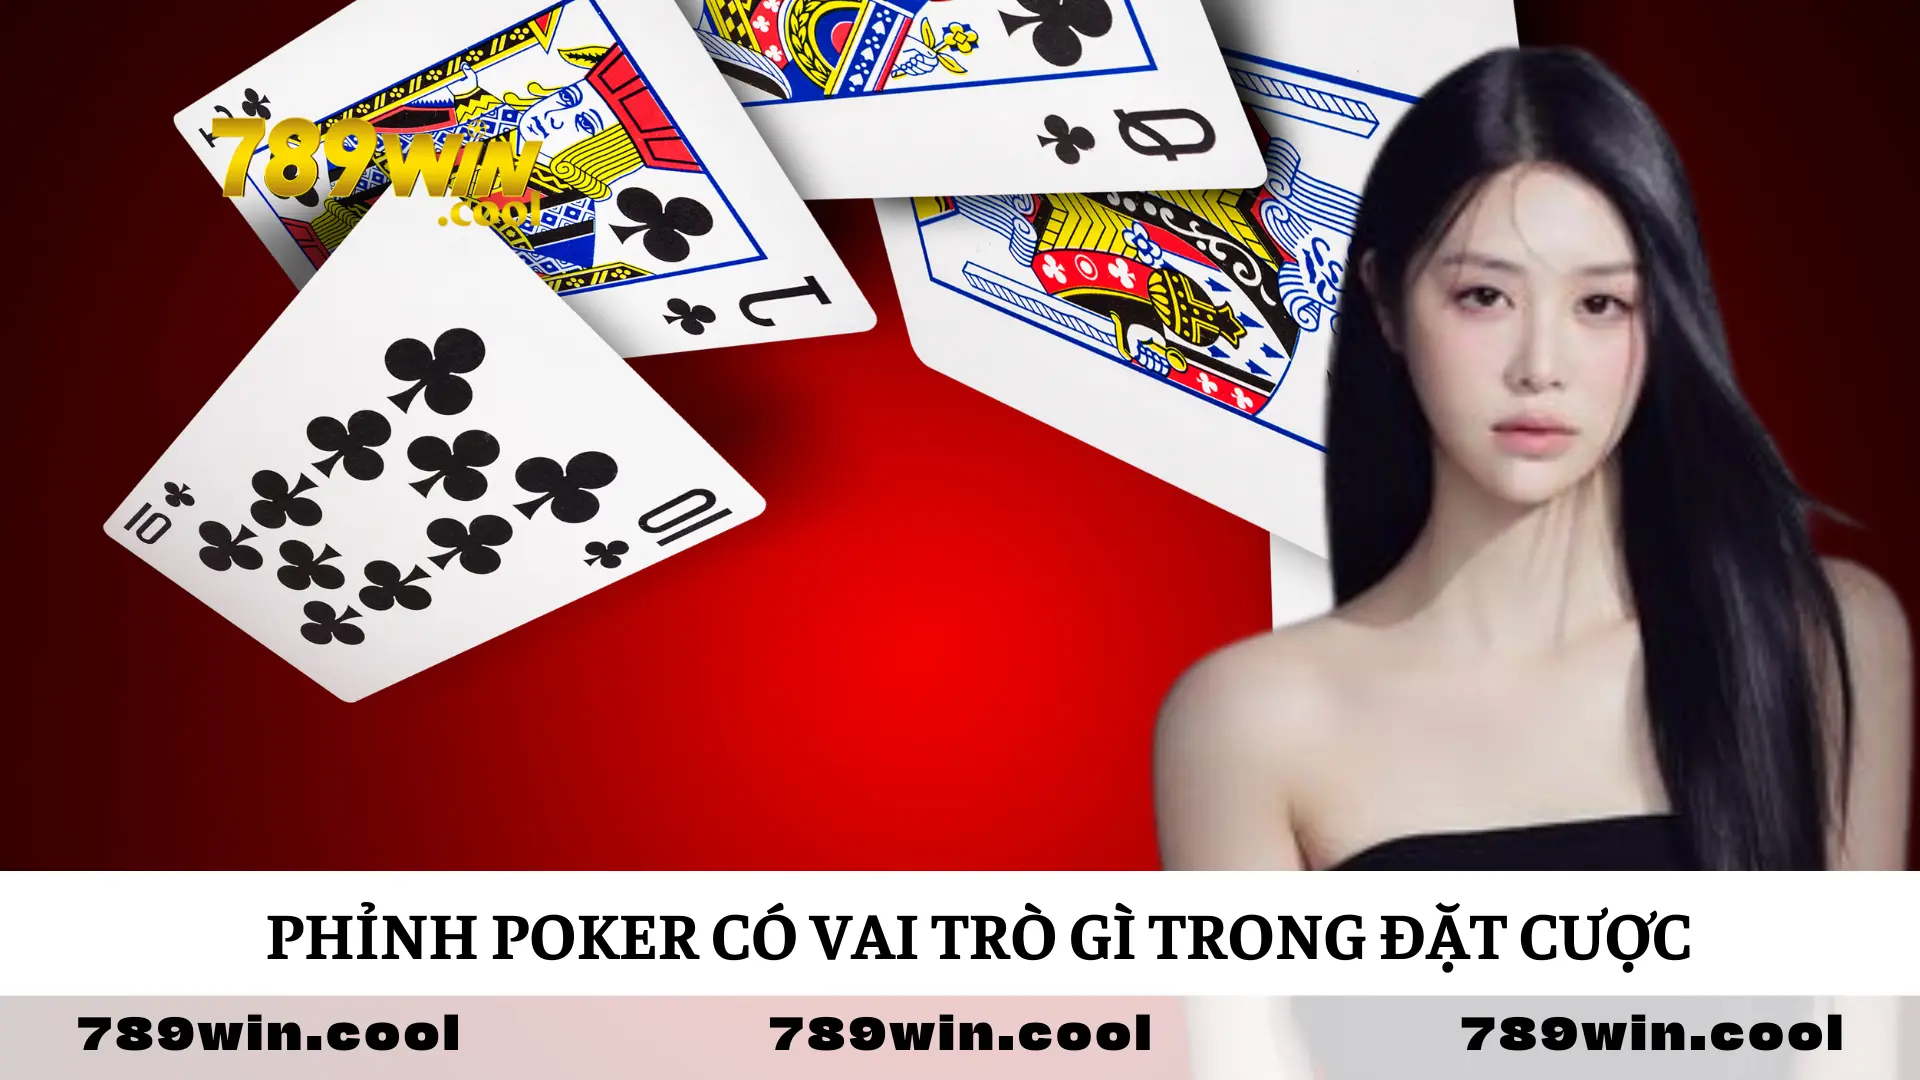 phinh-poker-dong-vai-tro-quan-trong-trong-tro-choi-casino